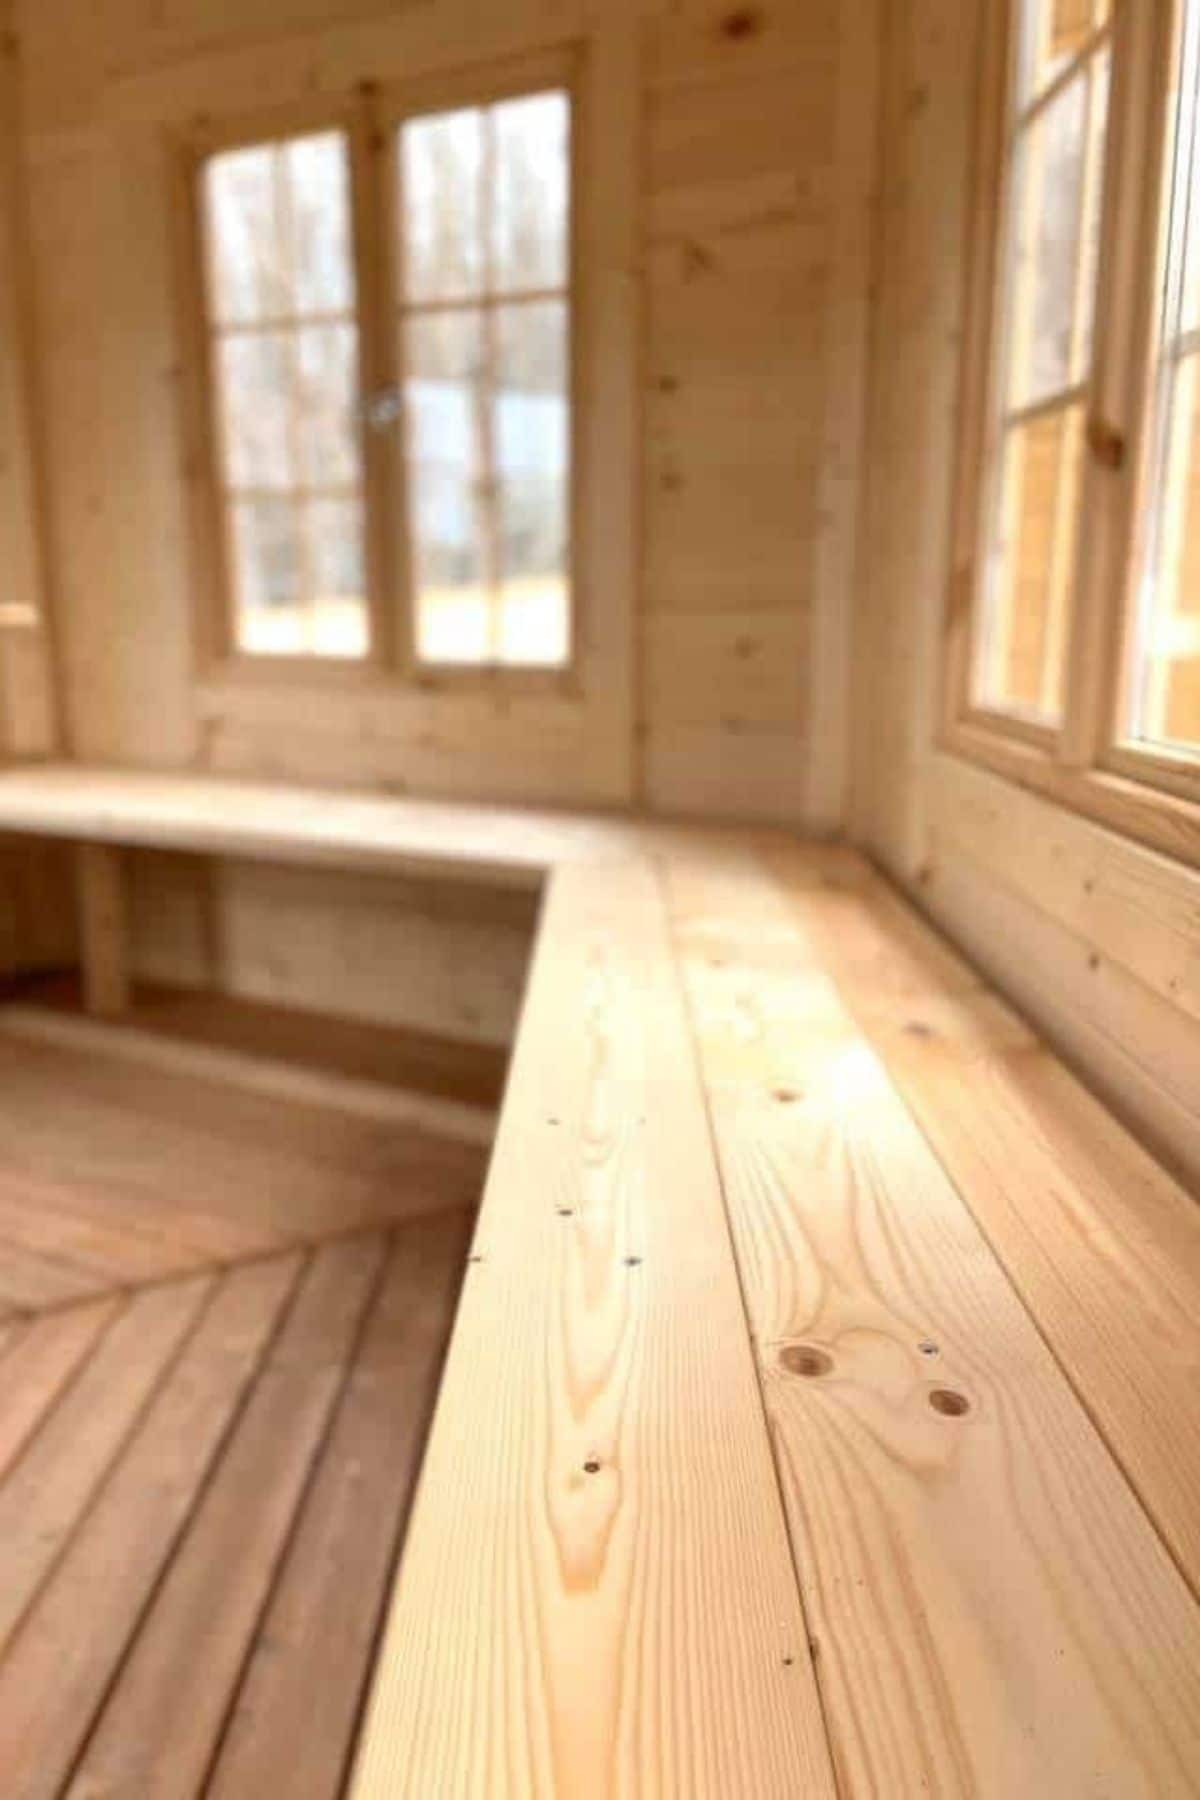 wooden bench beneath windows